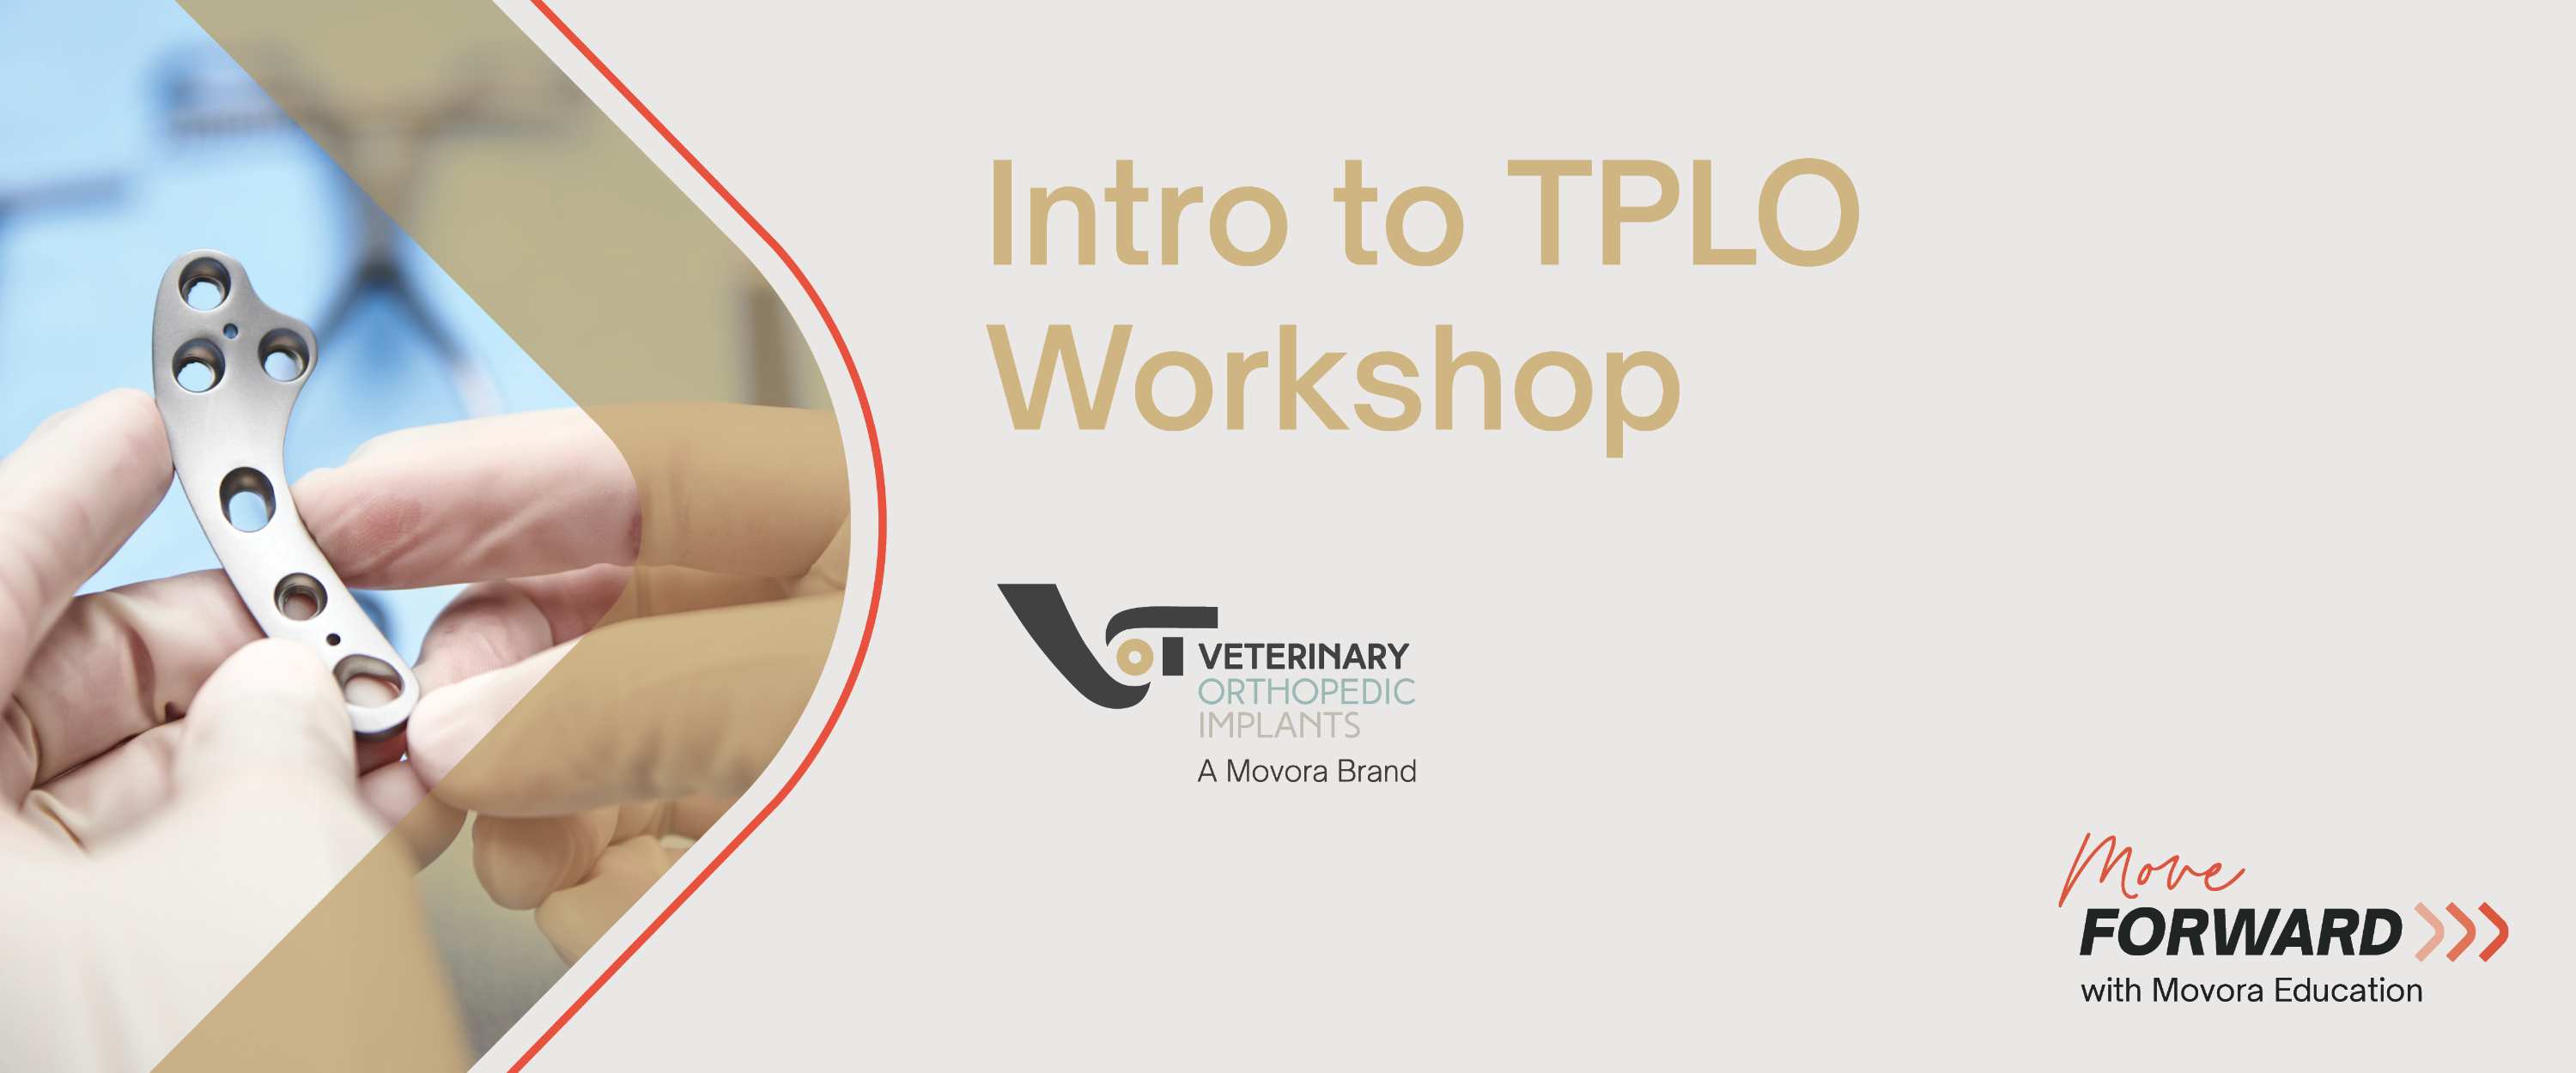 VOI TPLO Workshop Banner